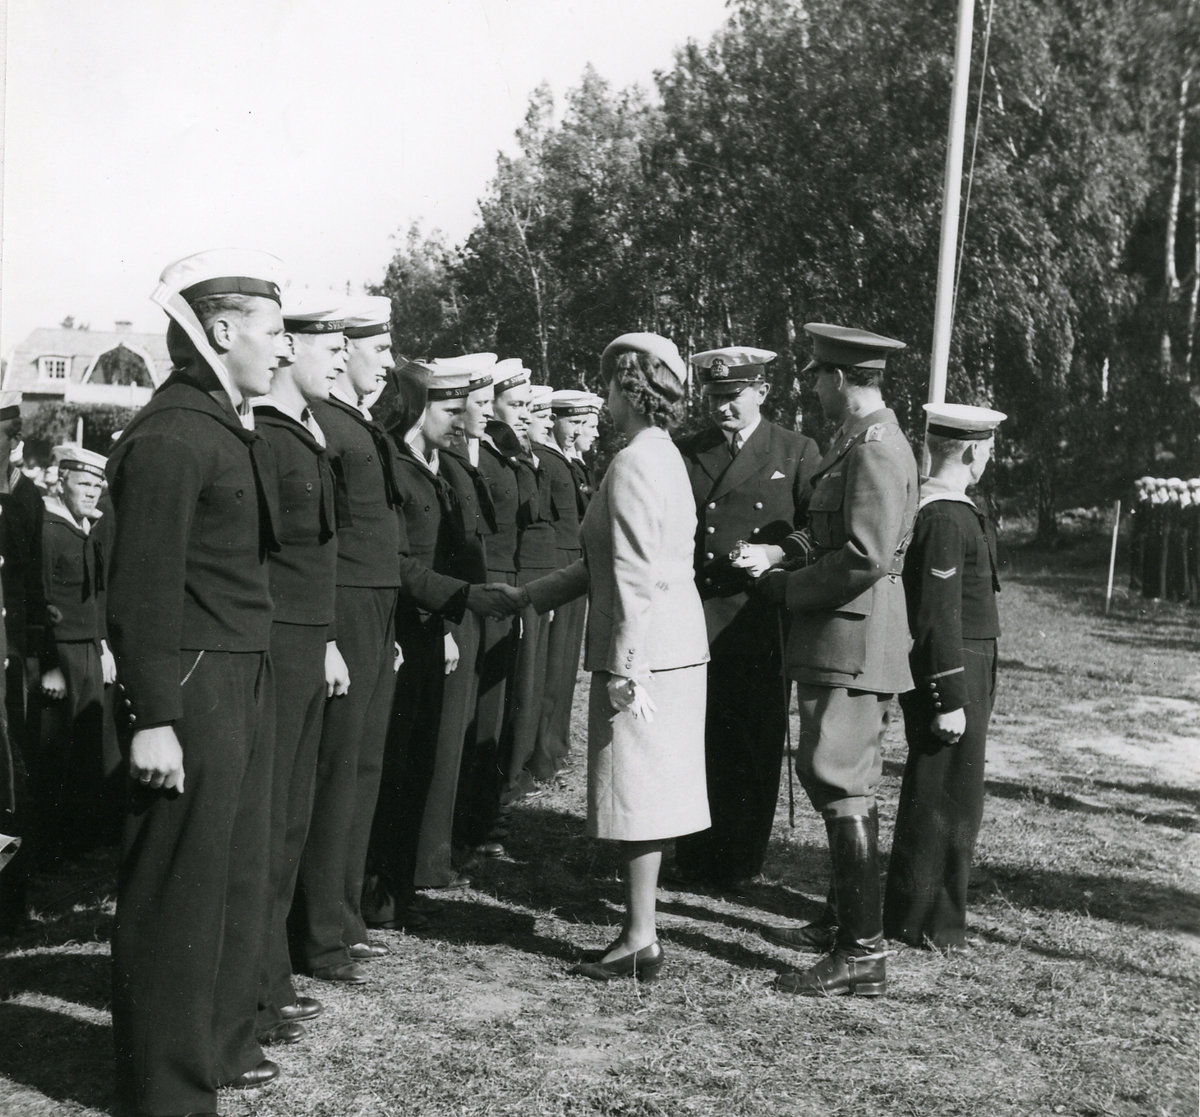 Prisutdelning vid Hårsfjärdens idrottsplats.
Prinsessan Sibylla och Prins Gustav Adolf hälsar på manskap från pansarskeppet Sverige.